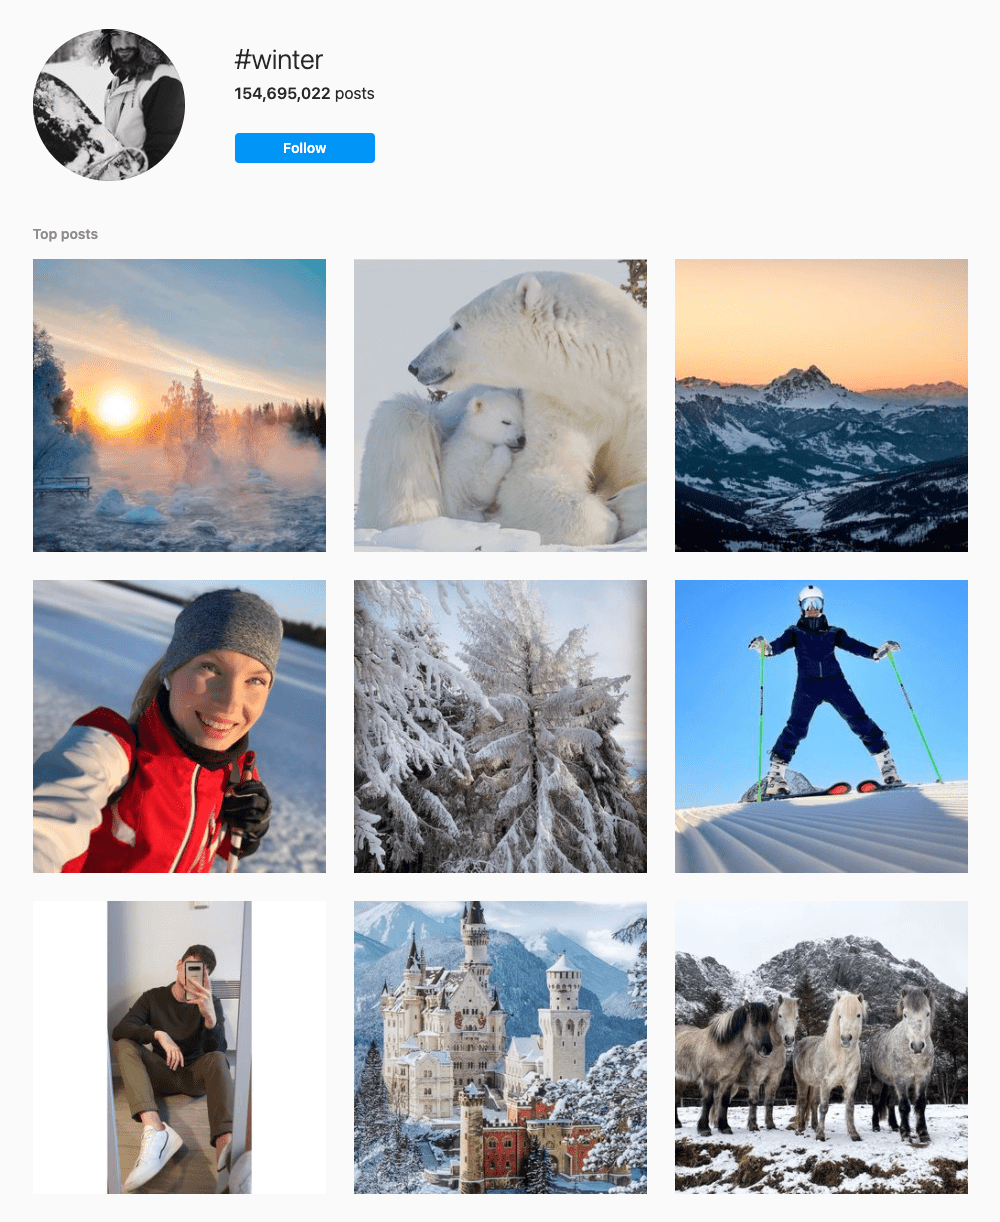 #winter Hashtags for Instagram